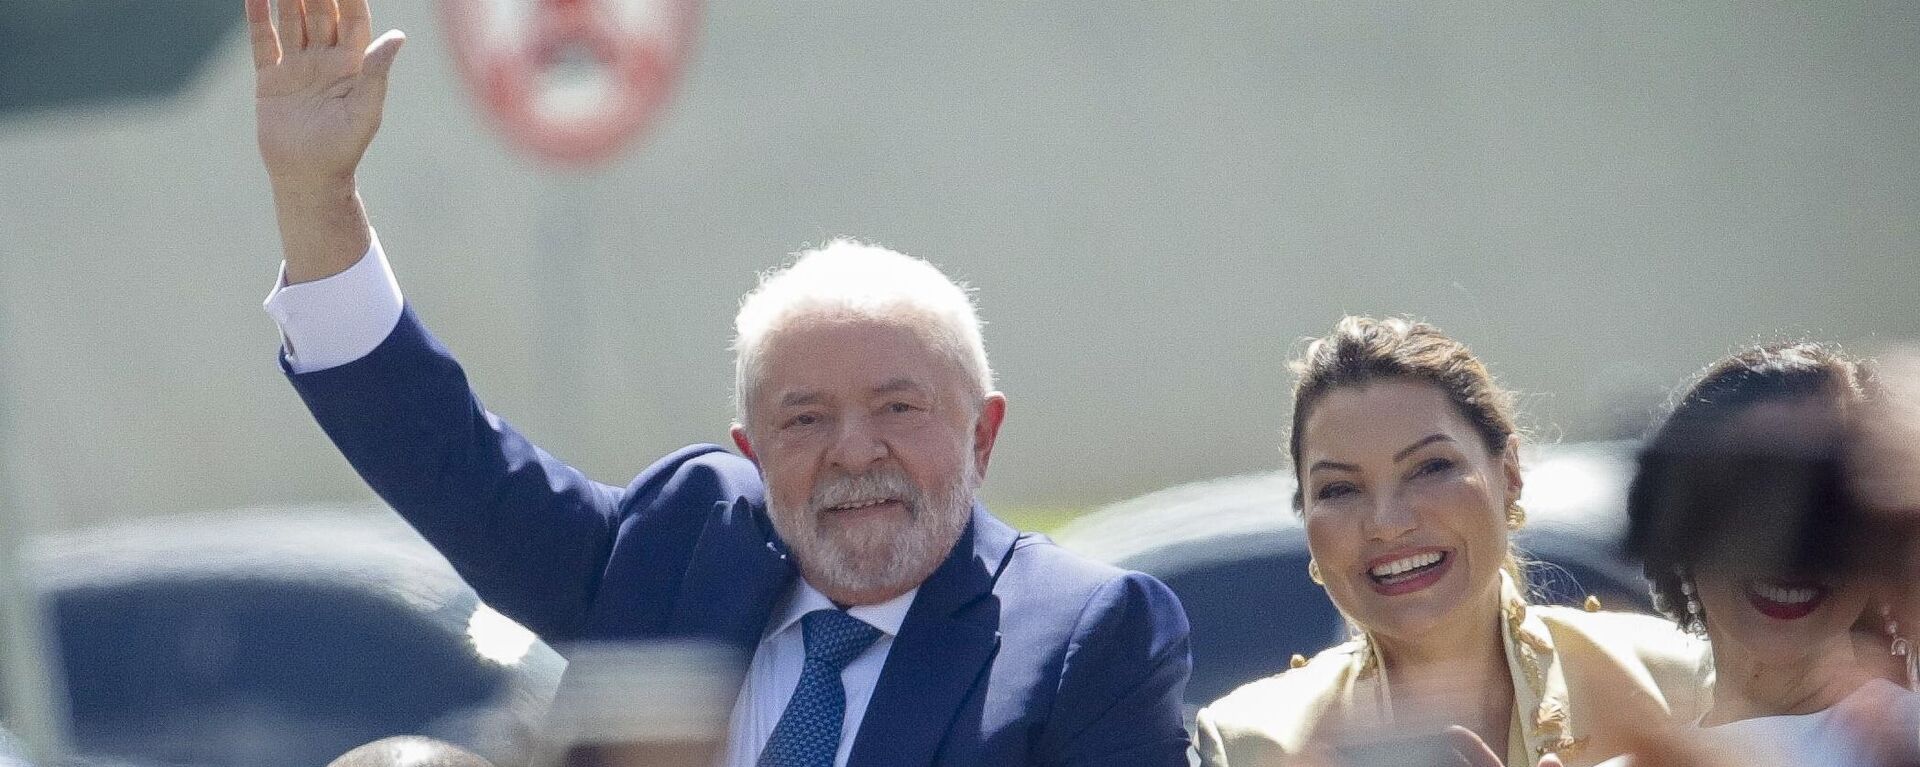 O presidente Luiz Inácio Lula da Silva (PT) acena após partir com sua esposa, Rosângela Silva, da Catedral Metropolitana para a cerimônia de posse no Congresso, em Brasília, no Brasil, em 1º de janeiro de 2023 - Sputnik Brasil, 1920, 02.01.2023